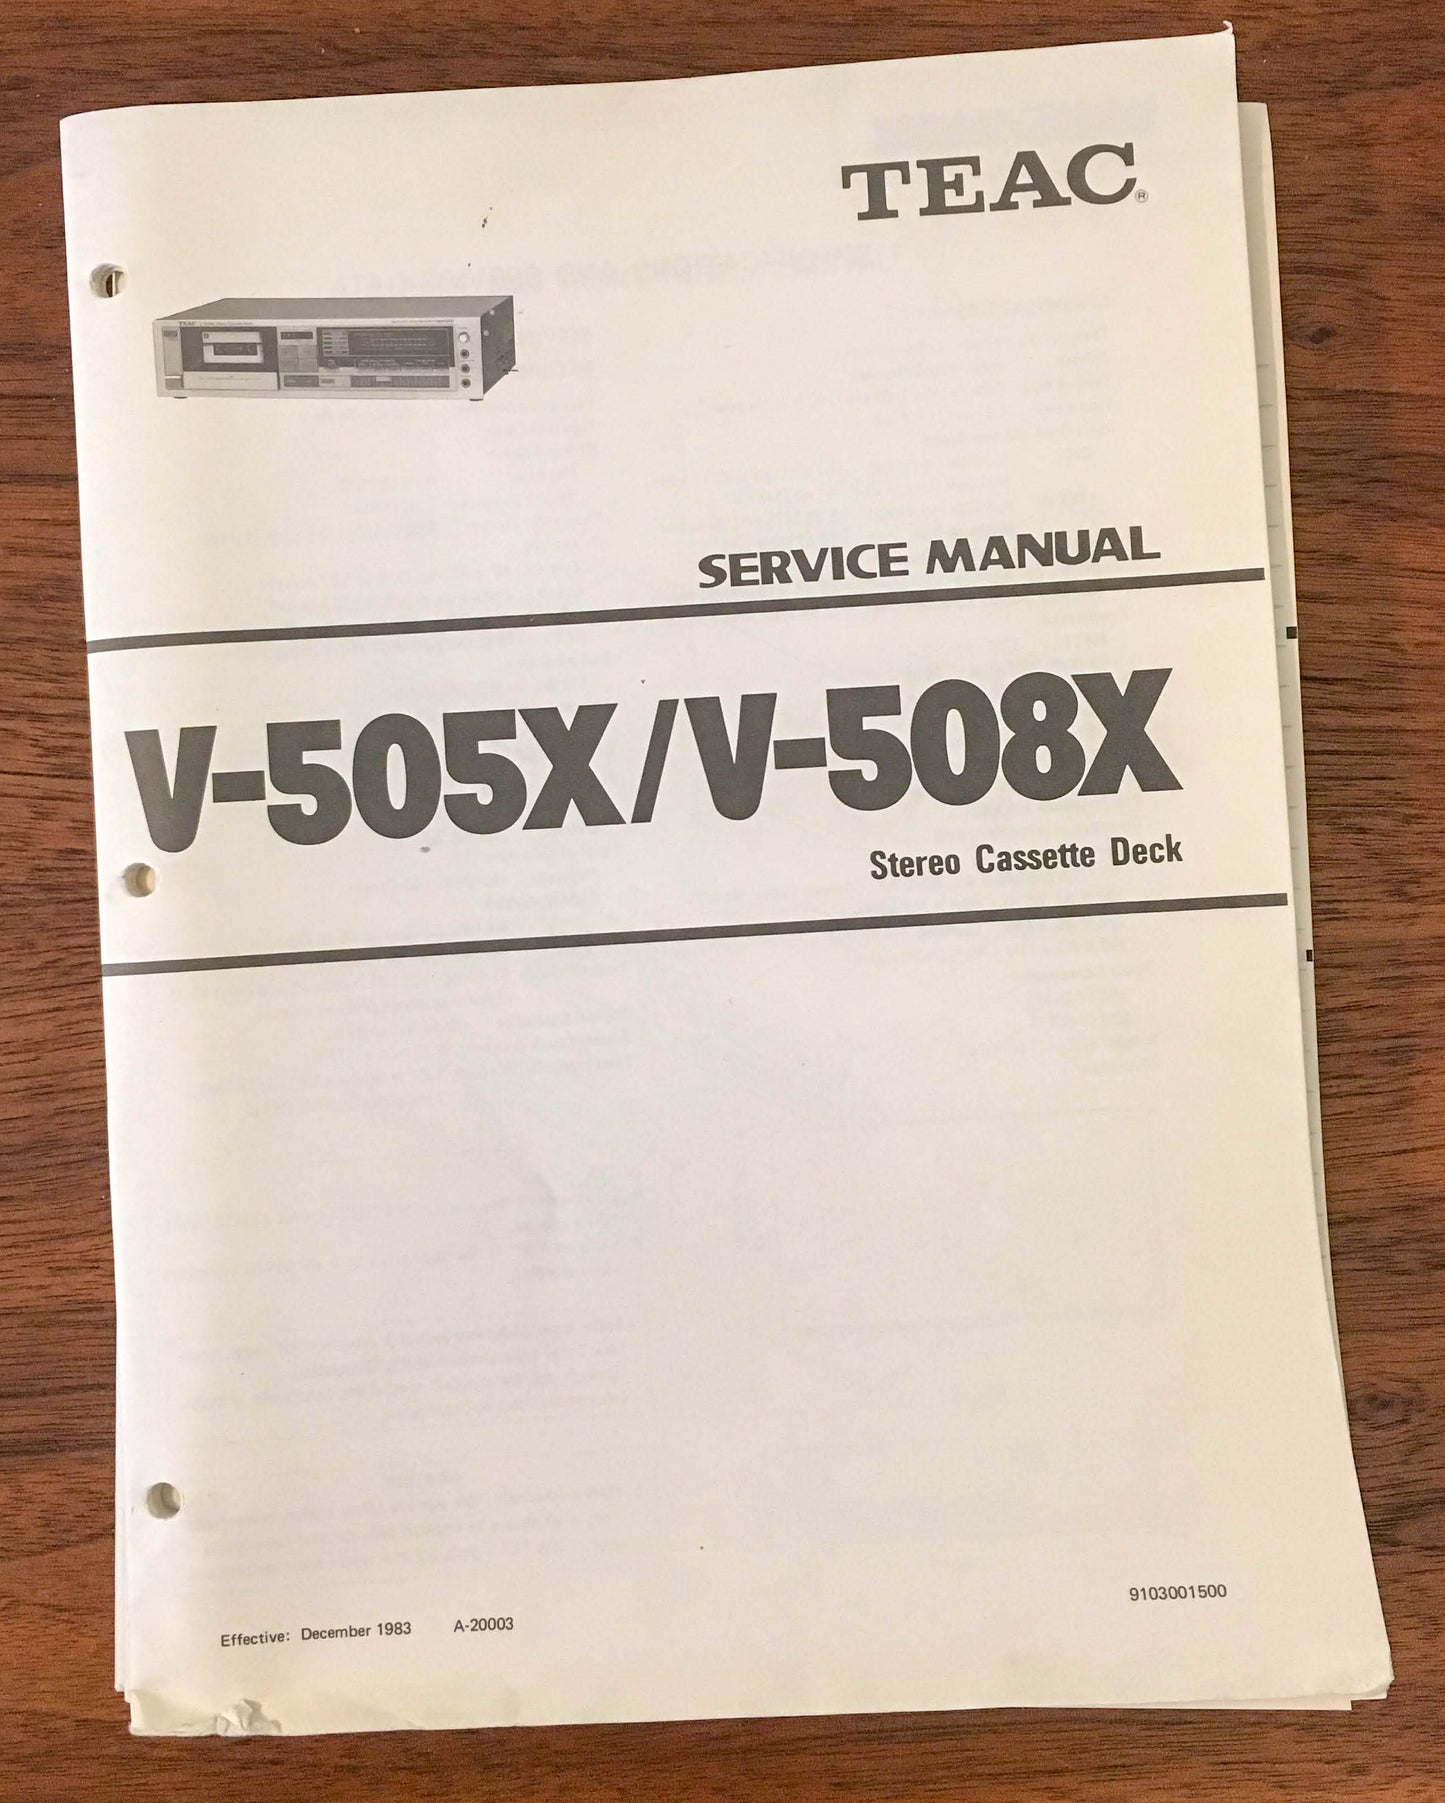 Teac V-530X V-430X CASSETTE DECK Service Manual *Original*